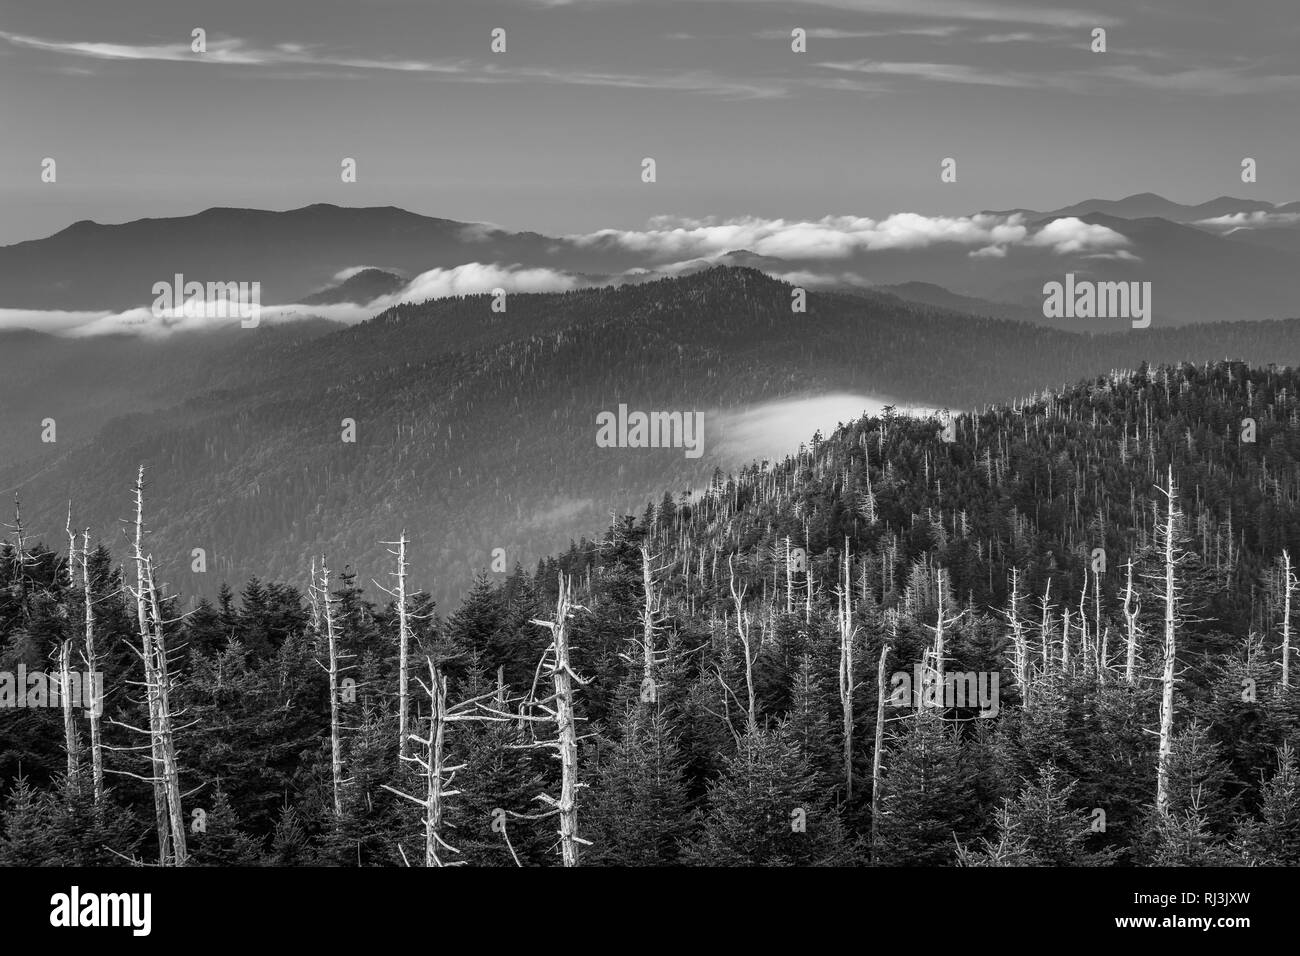 Avis de brouillard dans les Smoky Mountains de Clingman's Dome Tour d'observation, dans la région de Great Smoky Mountains National Park, Tennessee. Banque D'Images